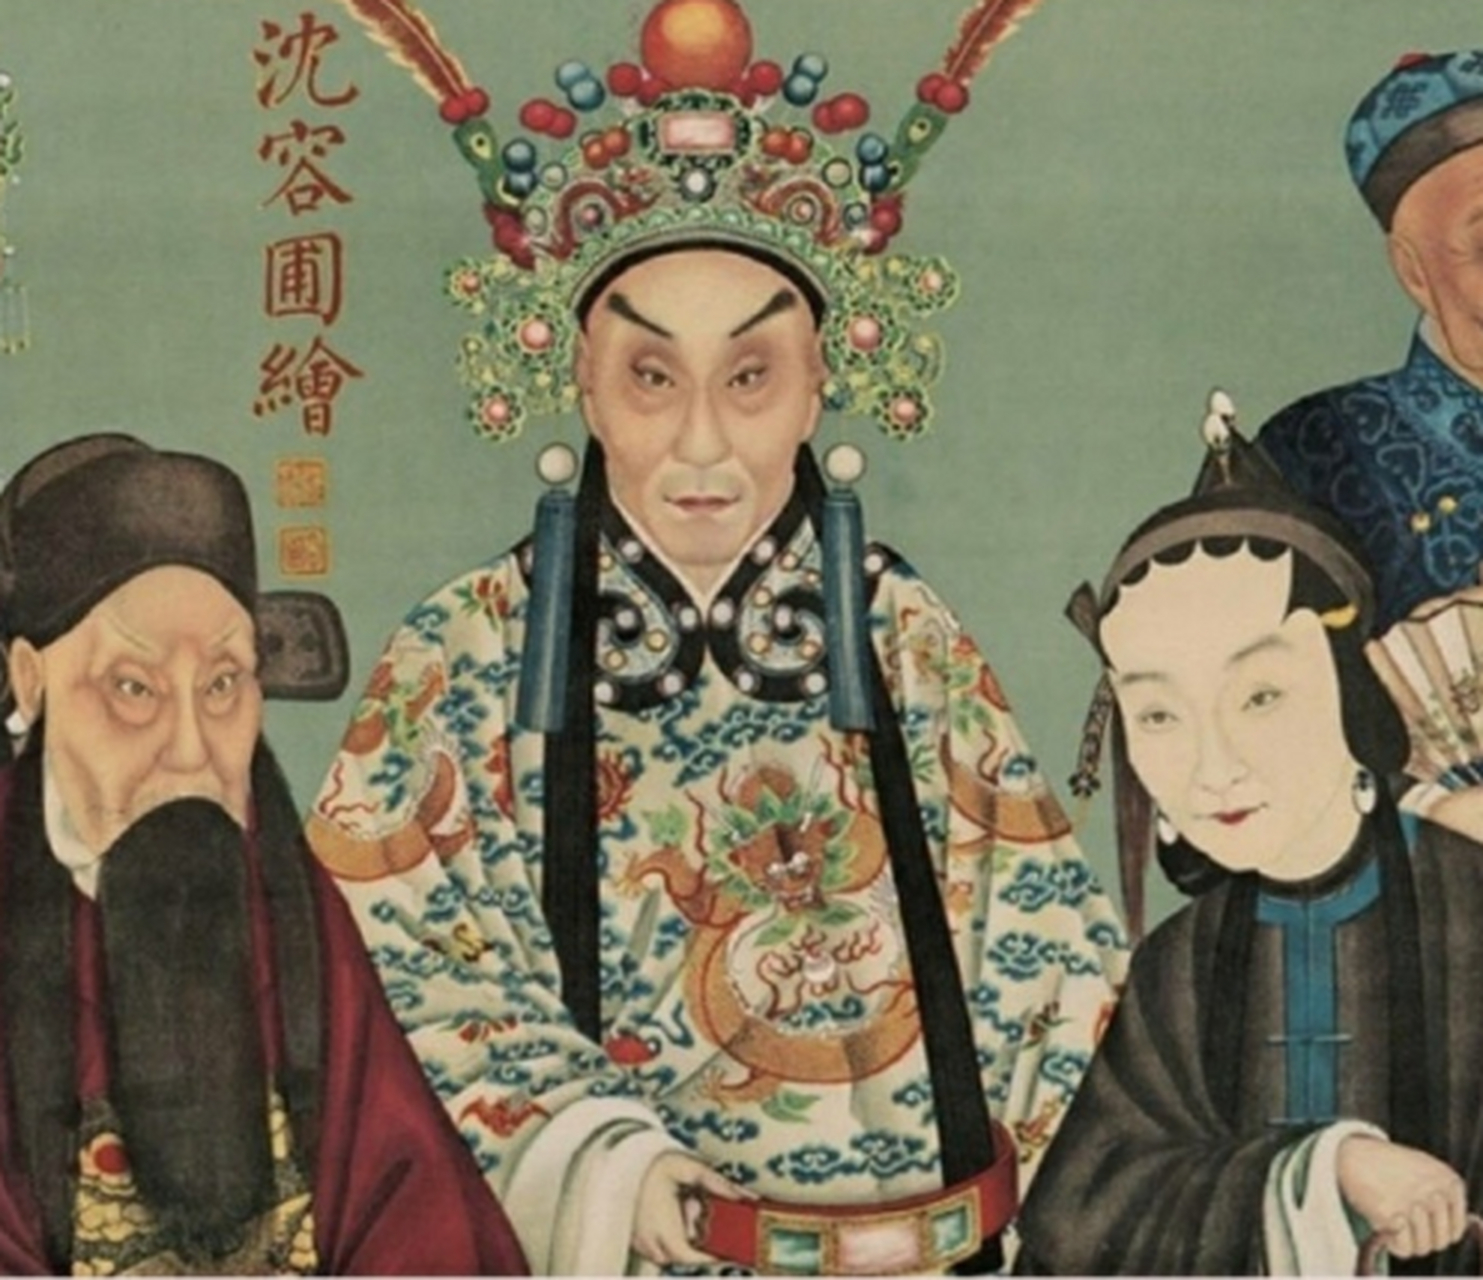 【京剧诞生】1791年1月12日:四大徽班进京祝寿,受到乾隆青睐,就留在北